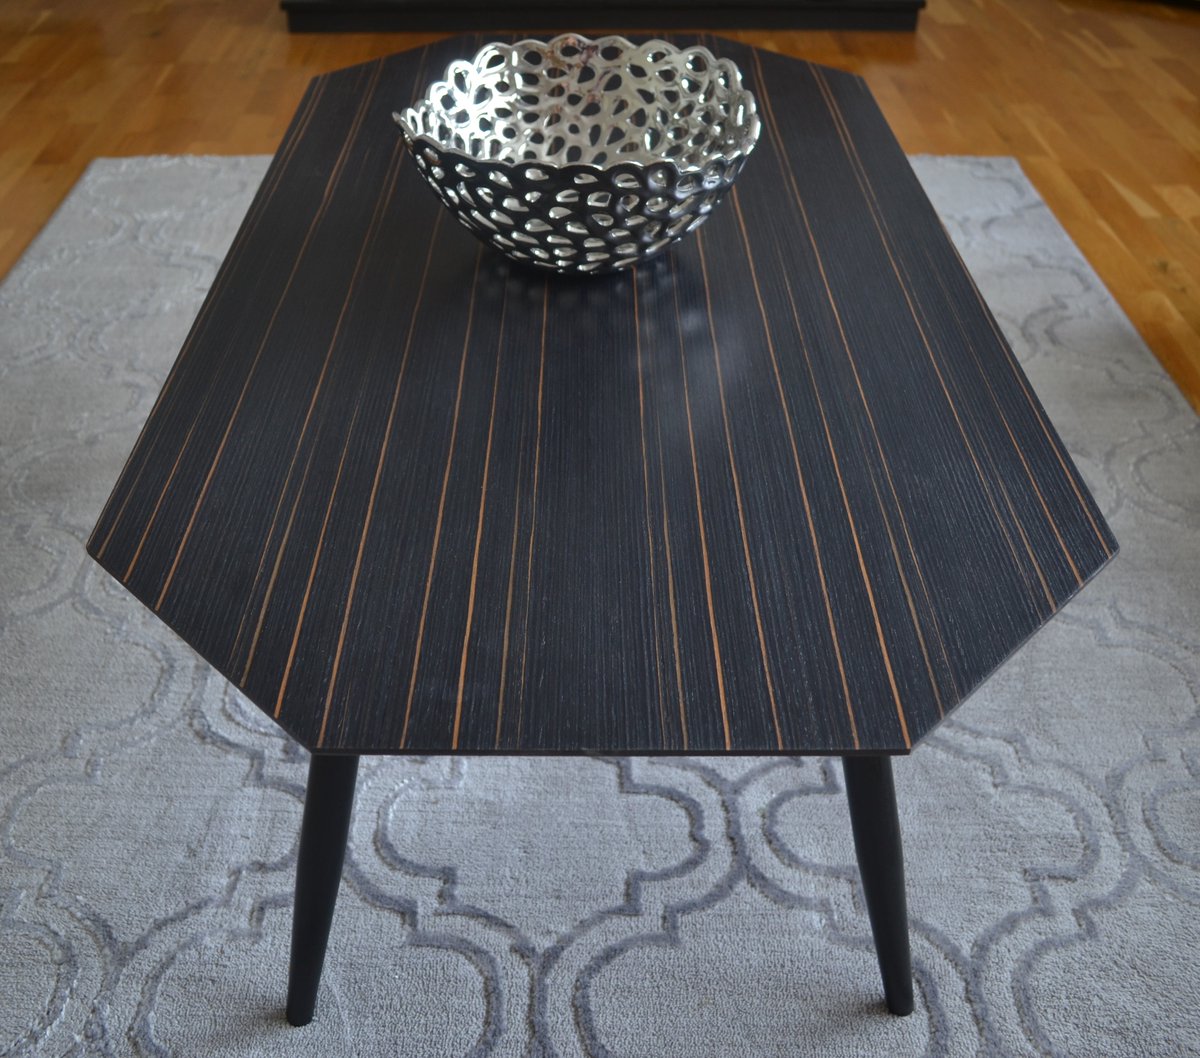 Ebony Octagon Coffee table
#furniture #interiorfurniture #designerfurniture #woodveneer